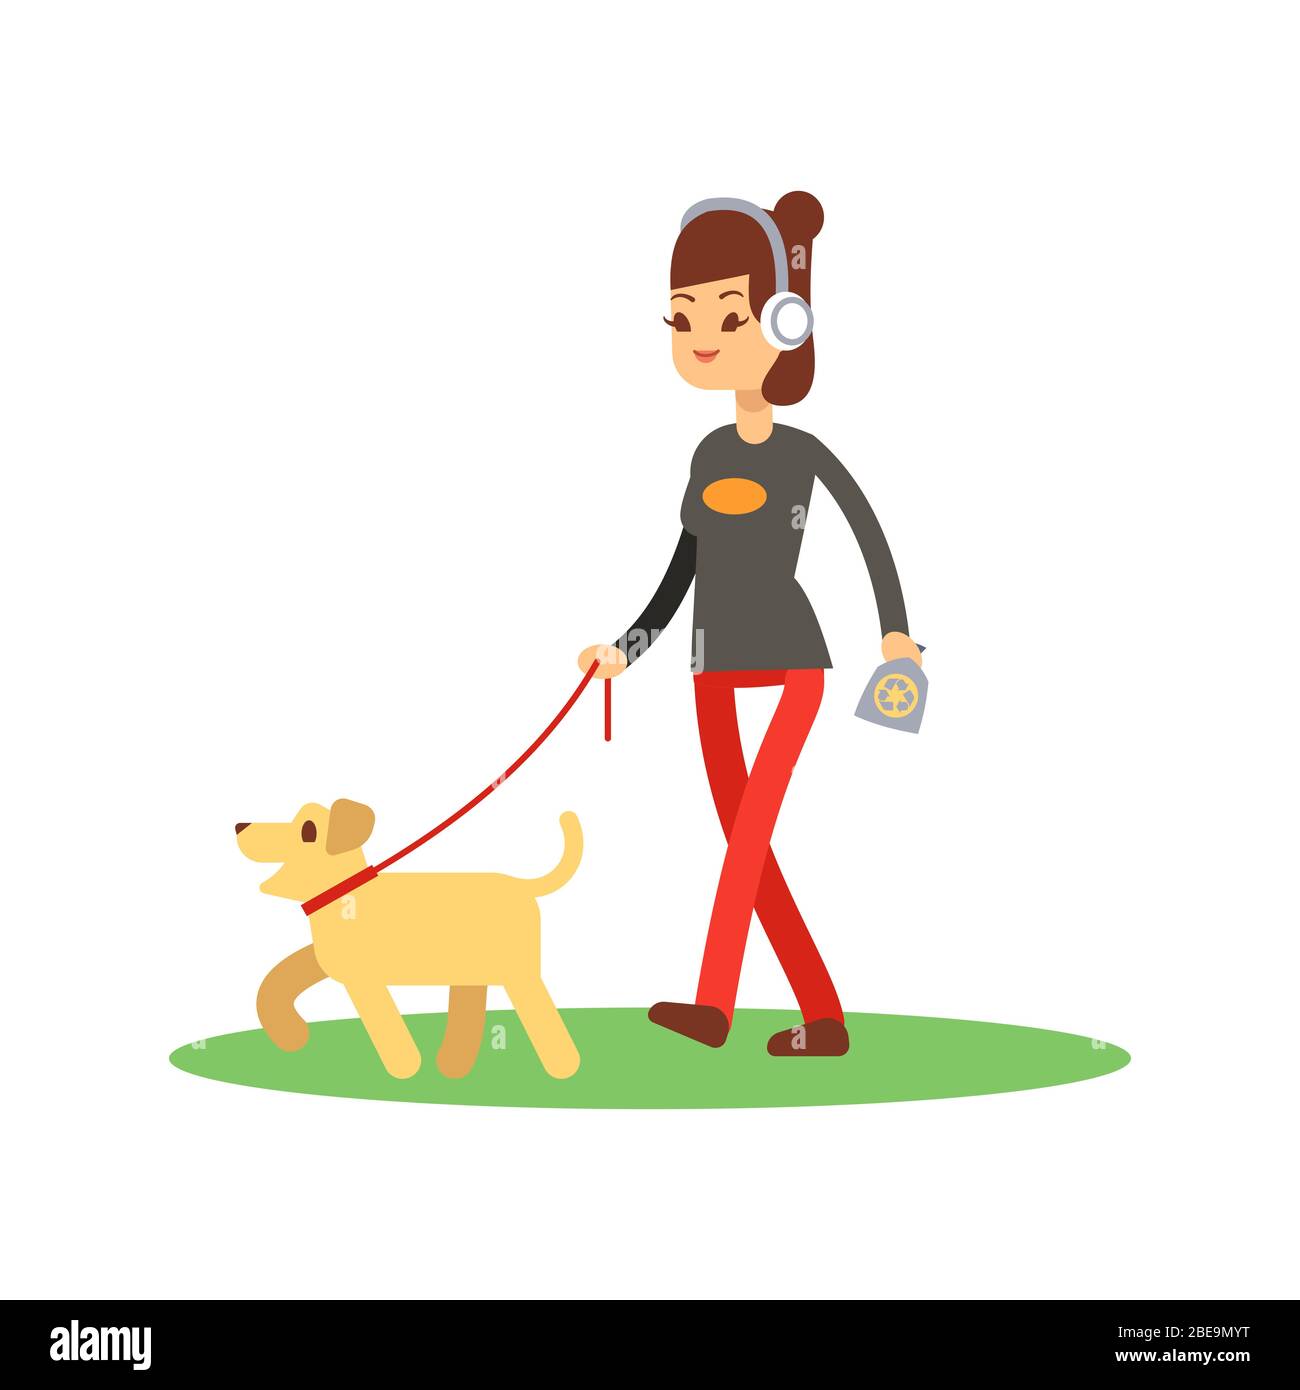 Hunde sauber Walking Konzept - Mädchen Spaziergänge Hund isoliert auf weiß. Vektorwandern mit Hundebilder Stock Vektor